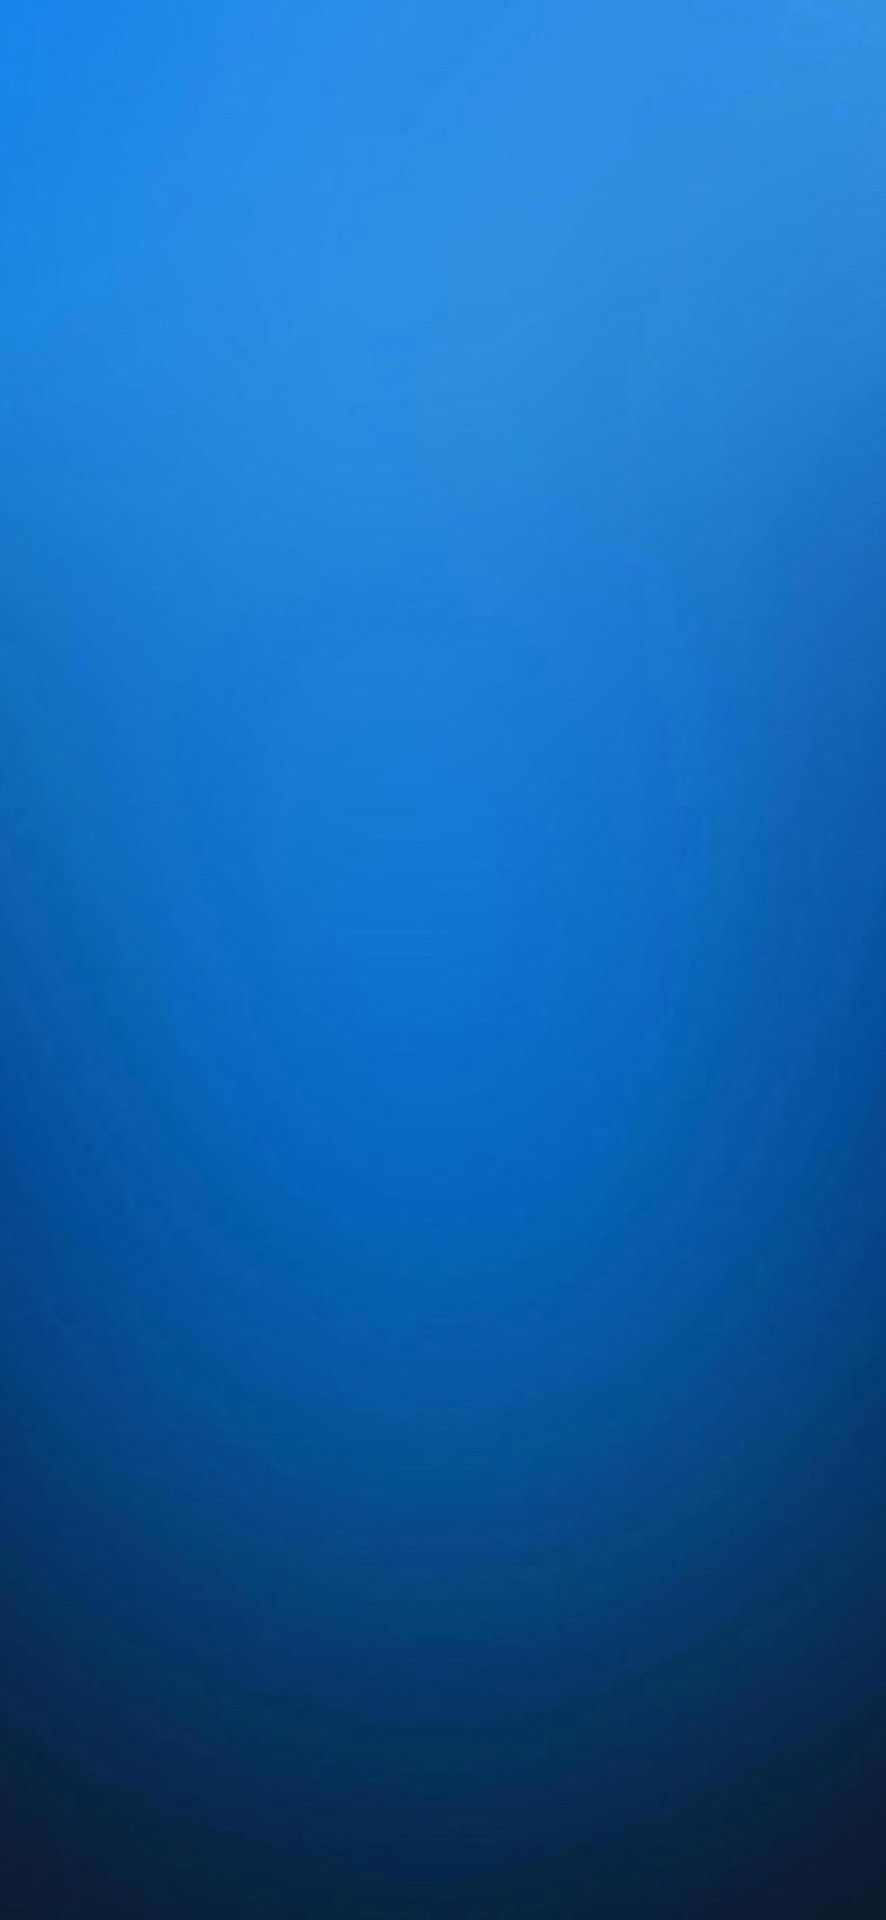 Blue Wallpaper HD  Wallpaper High Definition High Quality Widescreen